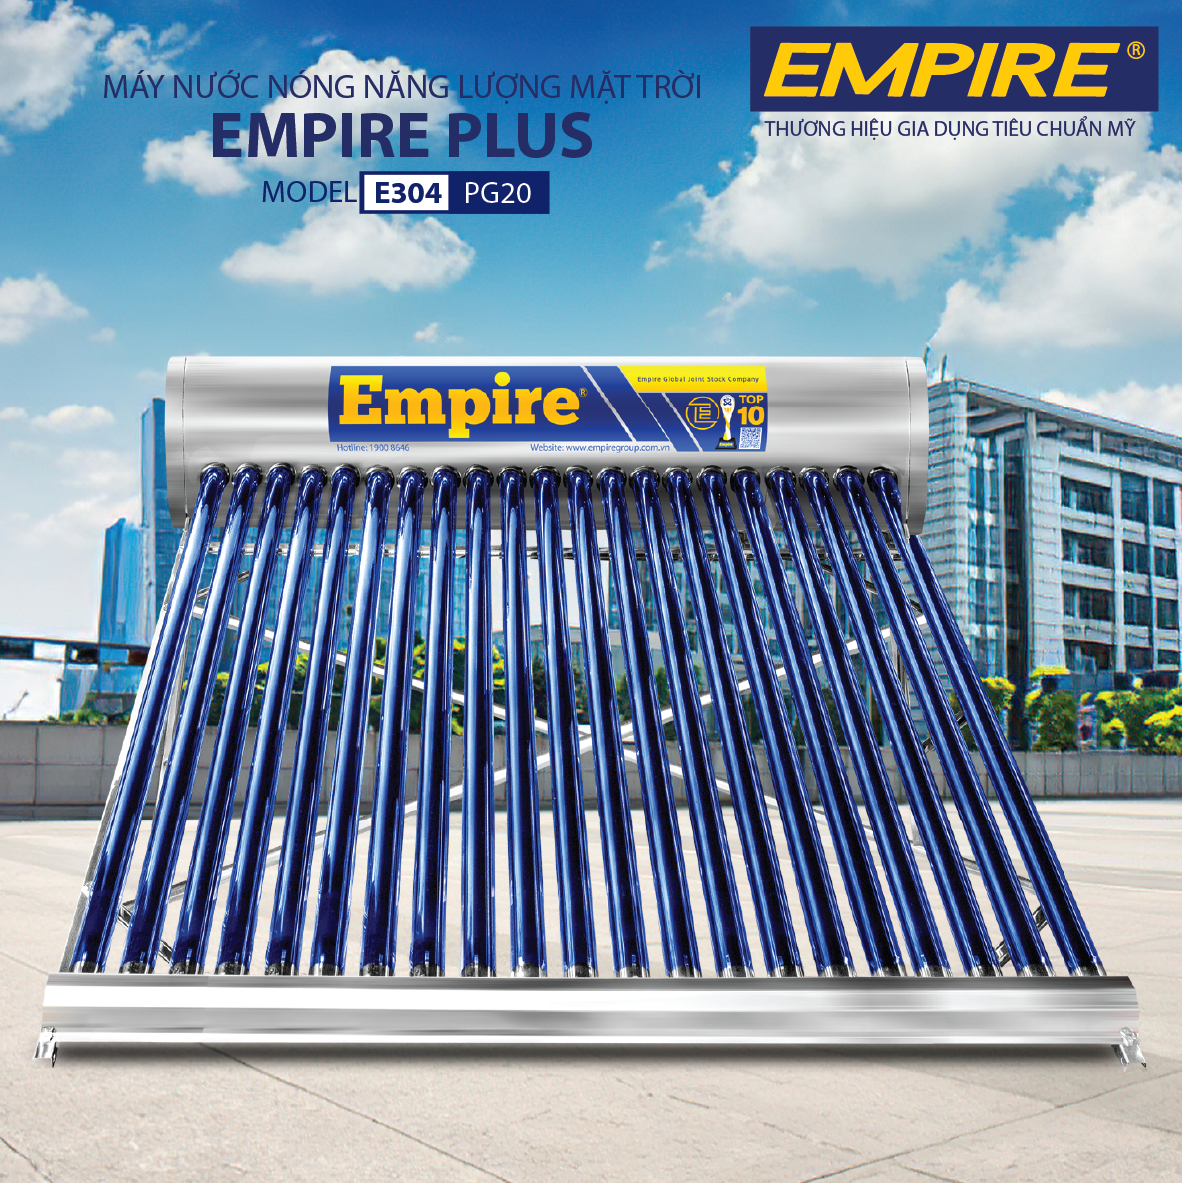 Máy nước nóng năng lượng mặt trời EMPIRE Plus 200 Lít - Hàng chính hãng.